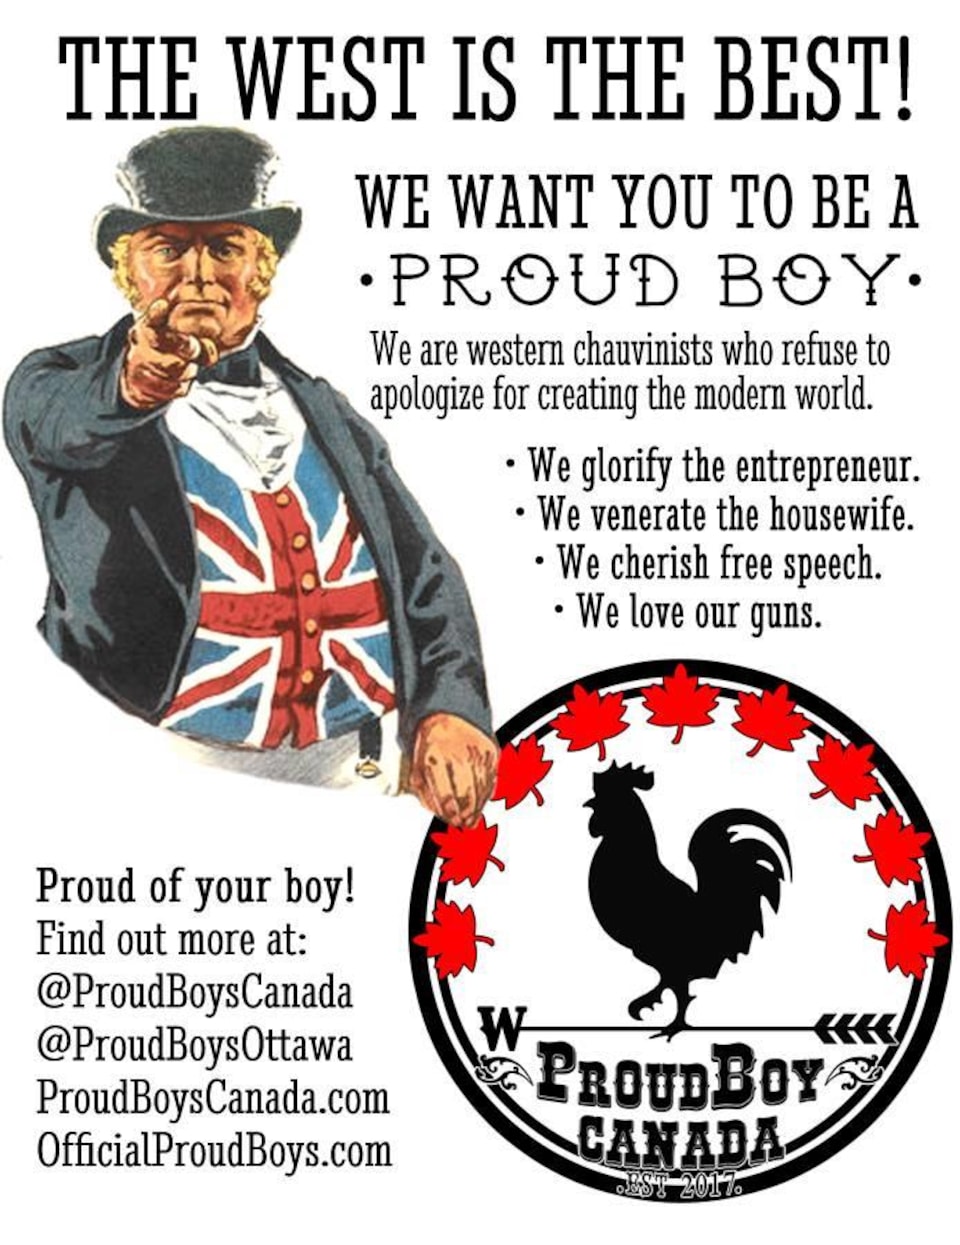 Affiche tirée de la page Facebook des Proud Boys canadiens.